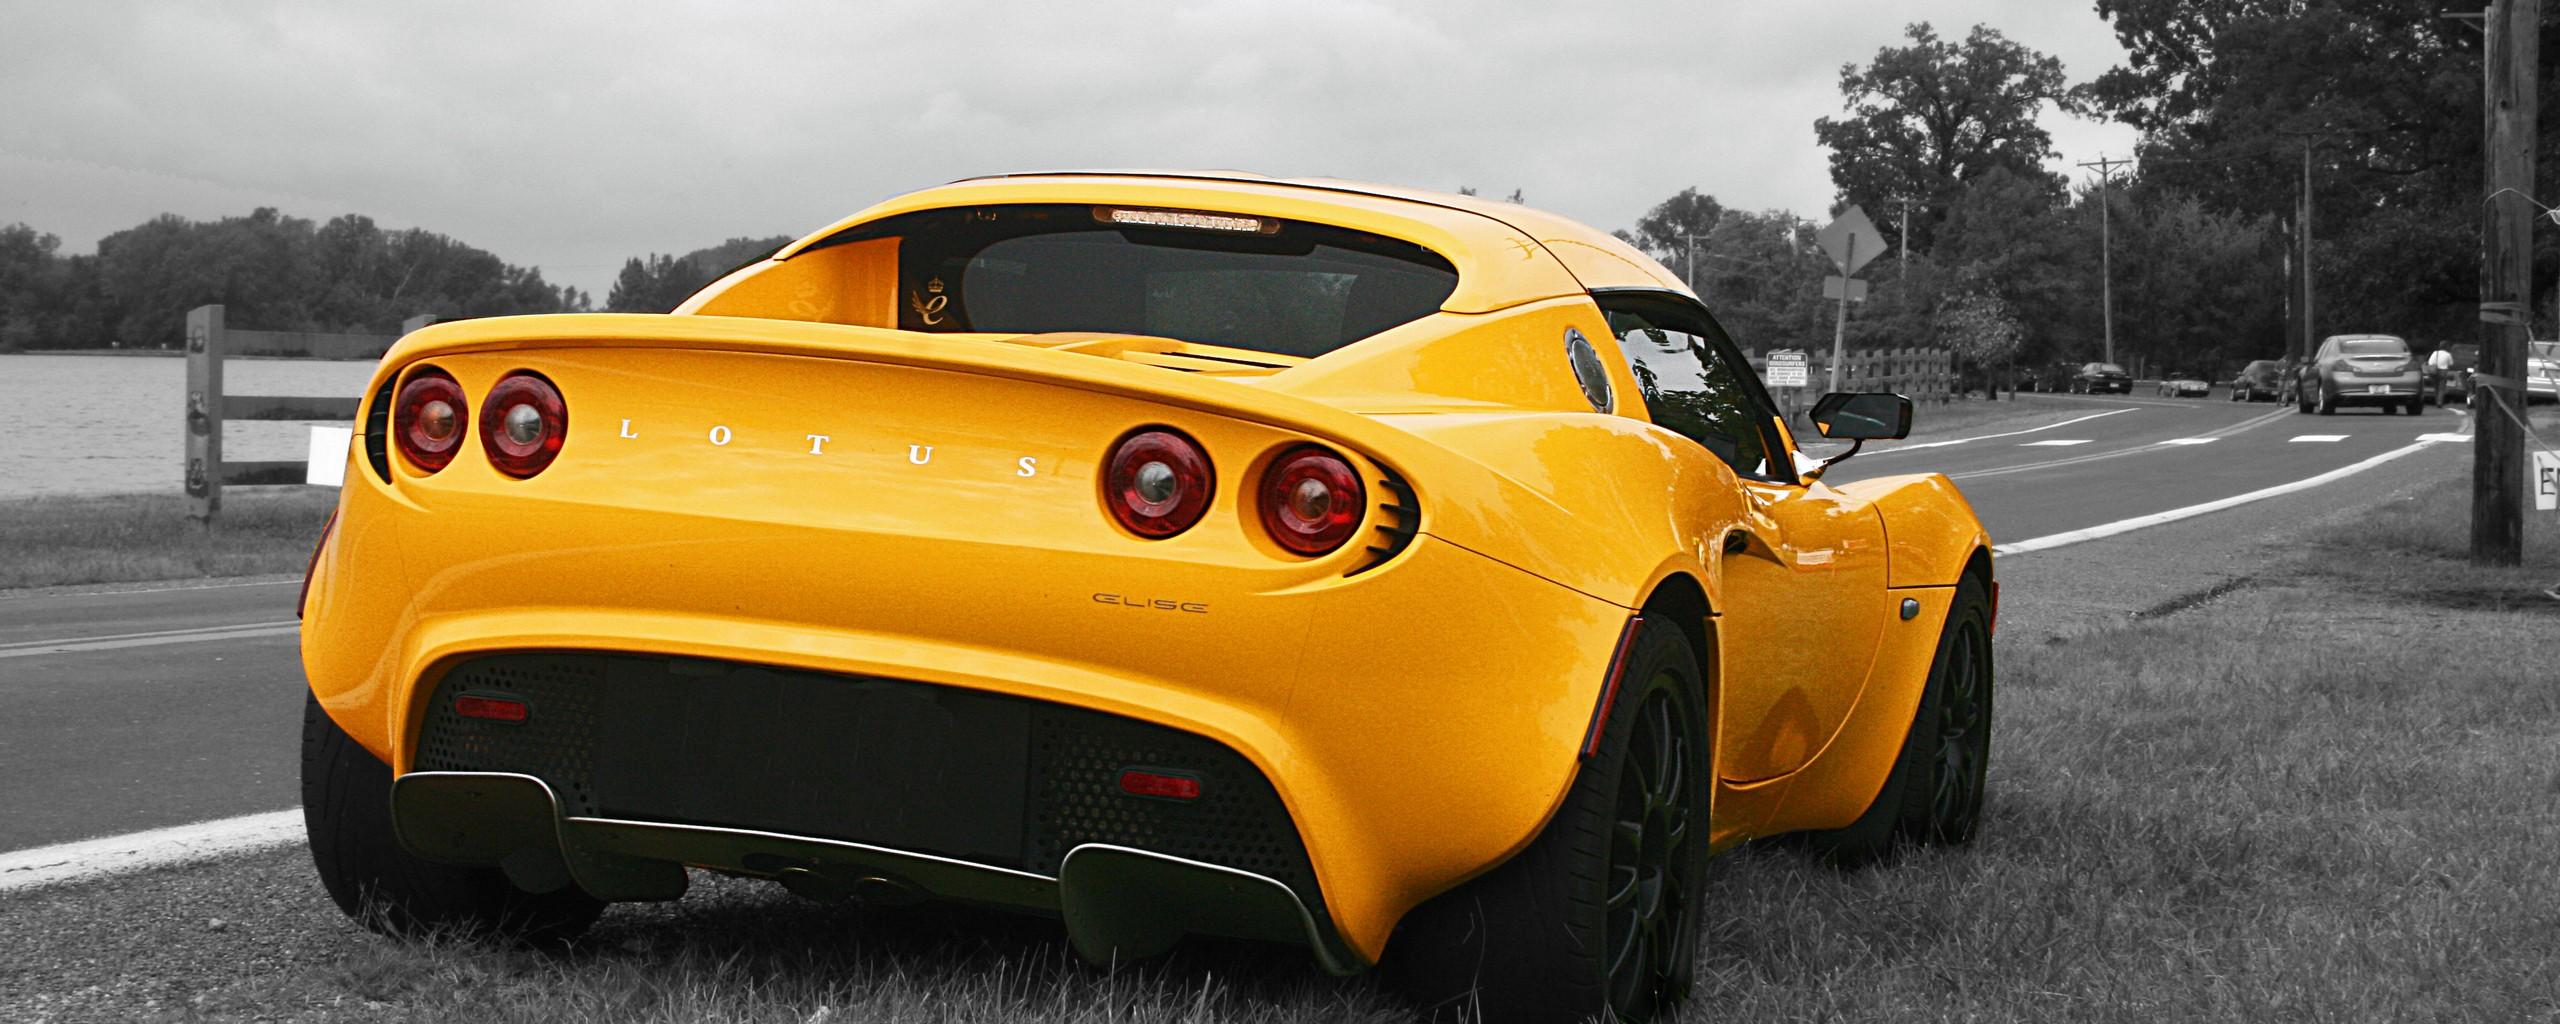 Lotus Elise желтого цвета, на чёрнобелом фоне 2560x1024